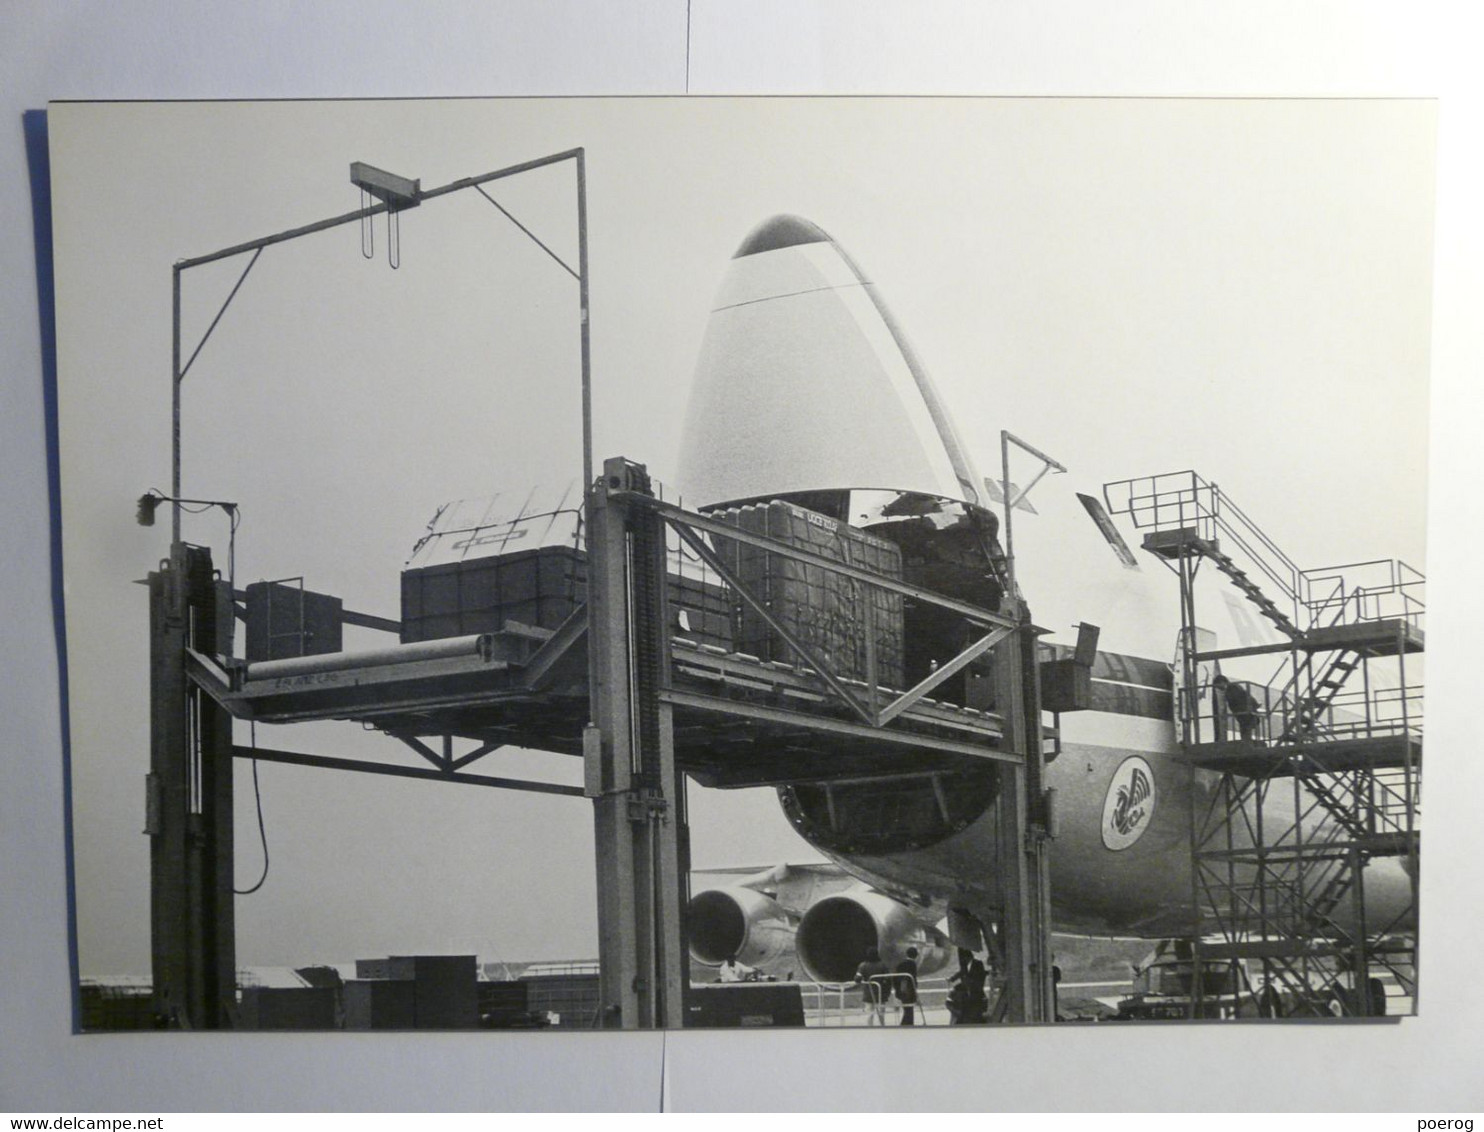 8 PHOTOS AVIONS AIR FRANCE DANS LEUR ENVELOPPE - SERVICE INFORMATION 1974 - CONCORDE BOEING 747 AIRBUS A300 CARAVELLE - Aerei